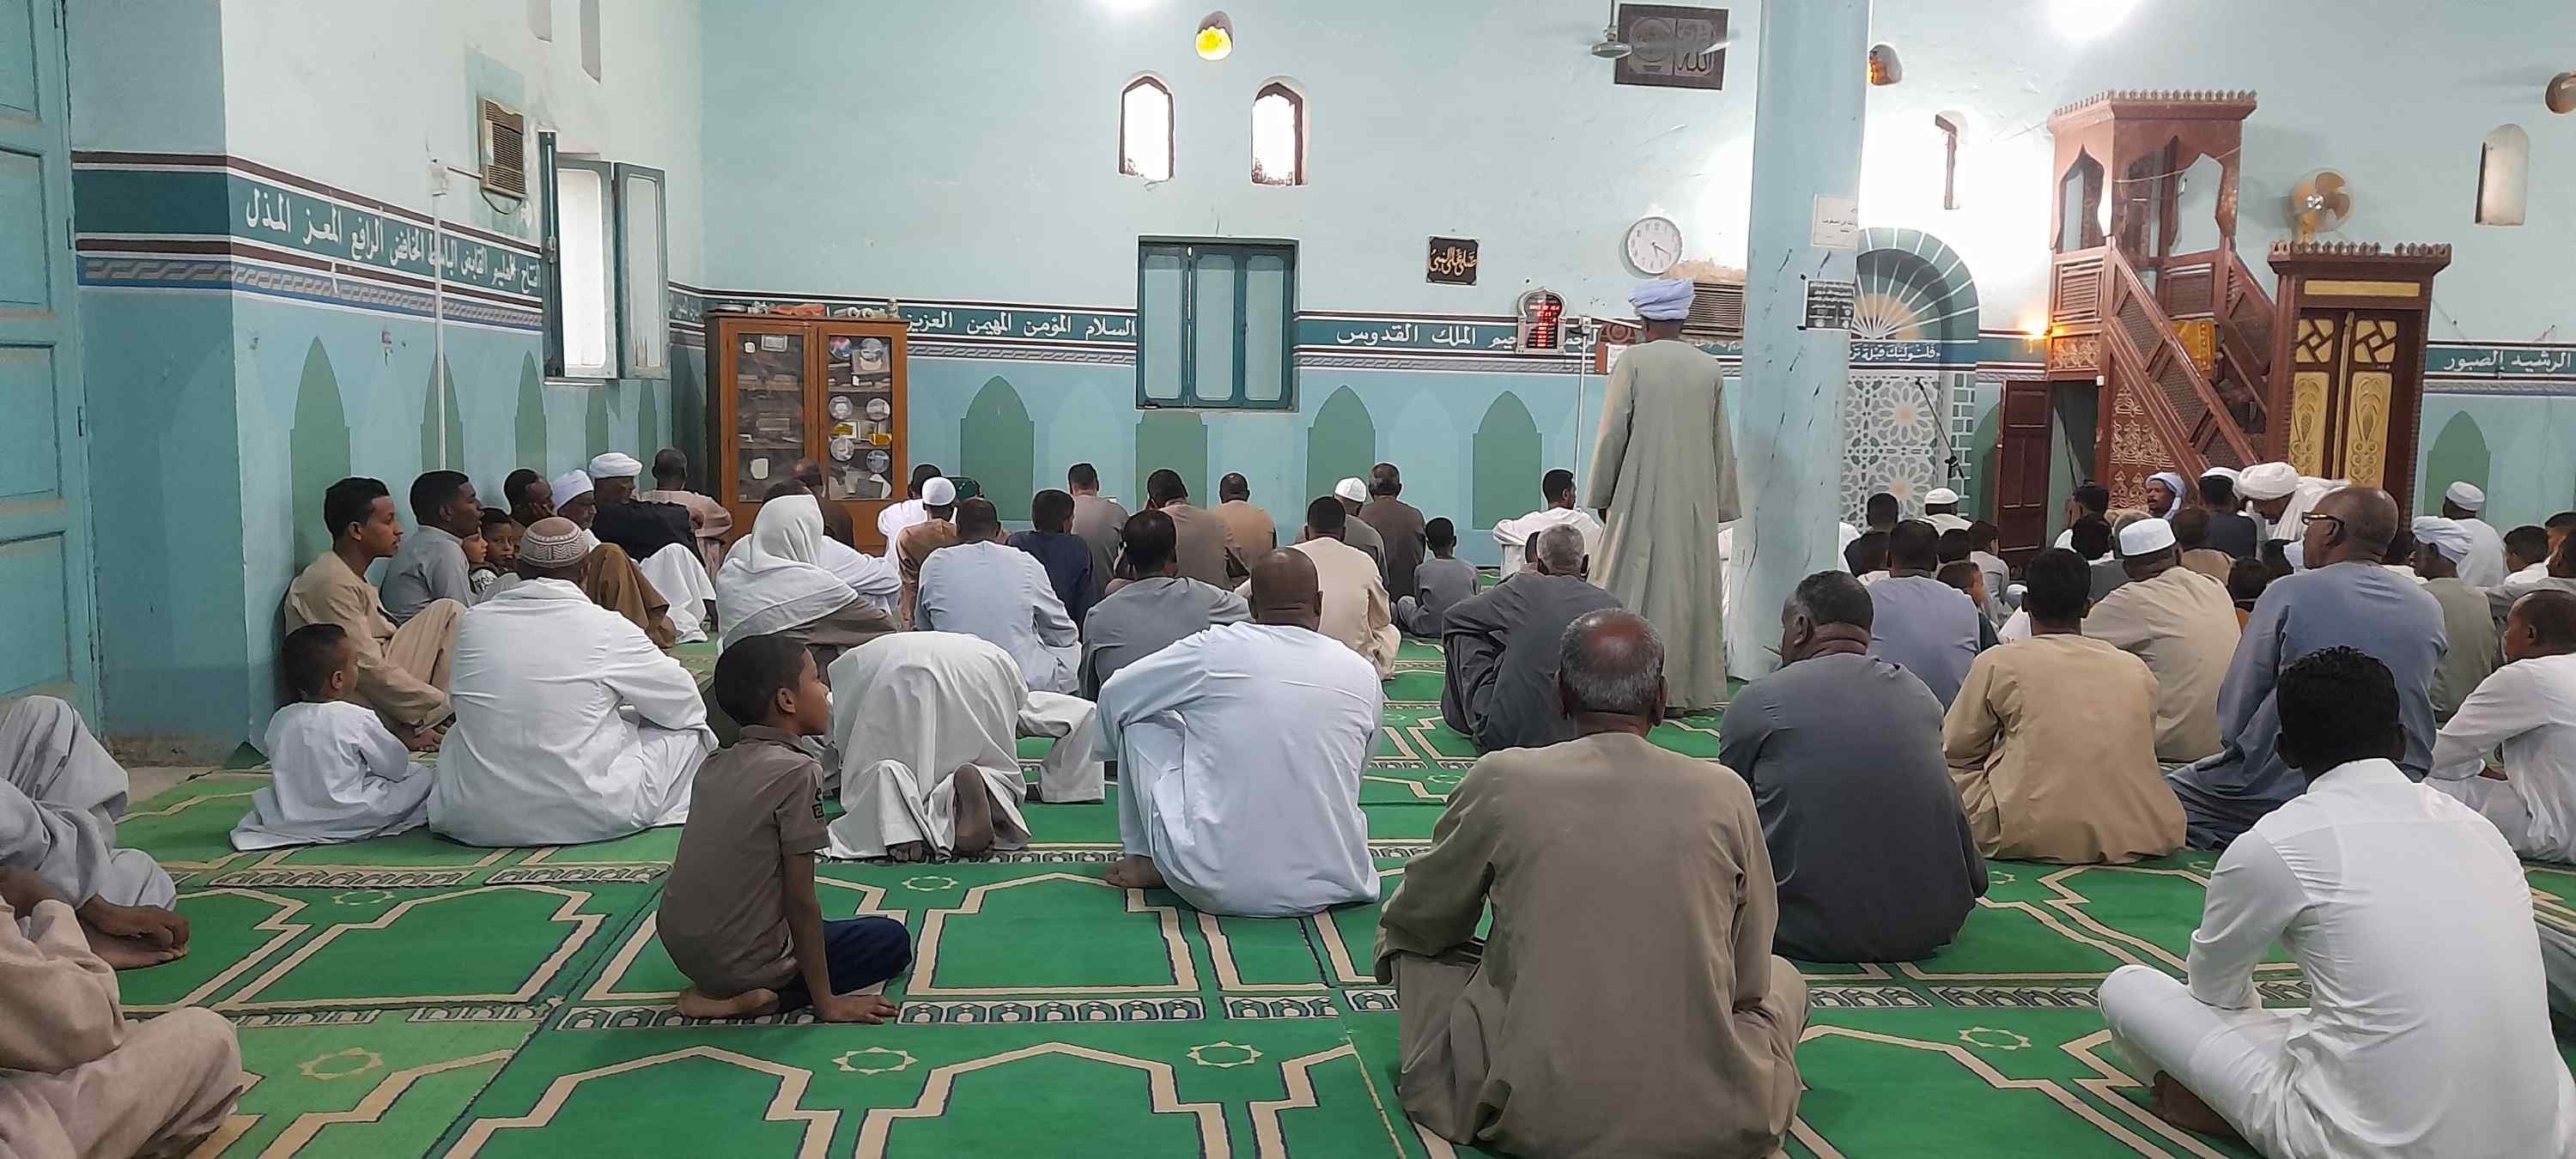 الله أكبر كبيرا.. تكبيرات العيد داخل مساجد أسوان فى عيد الأضحى المبارك (1)